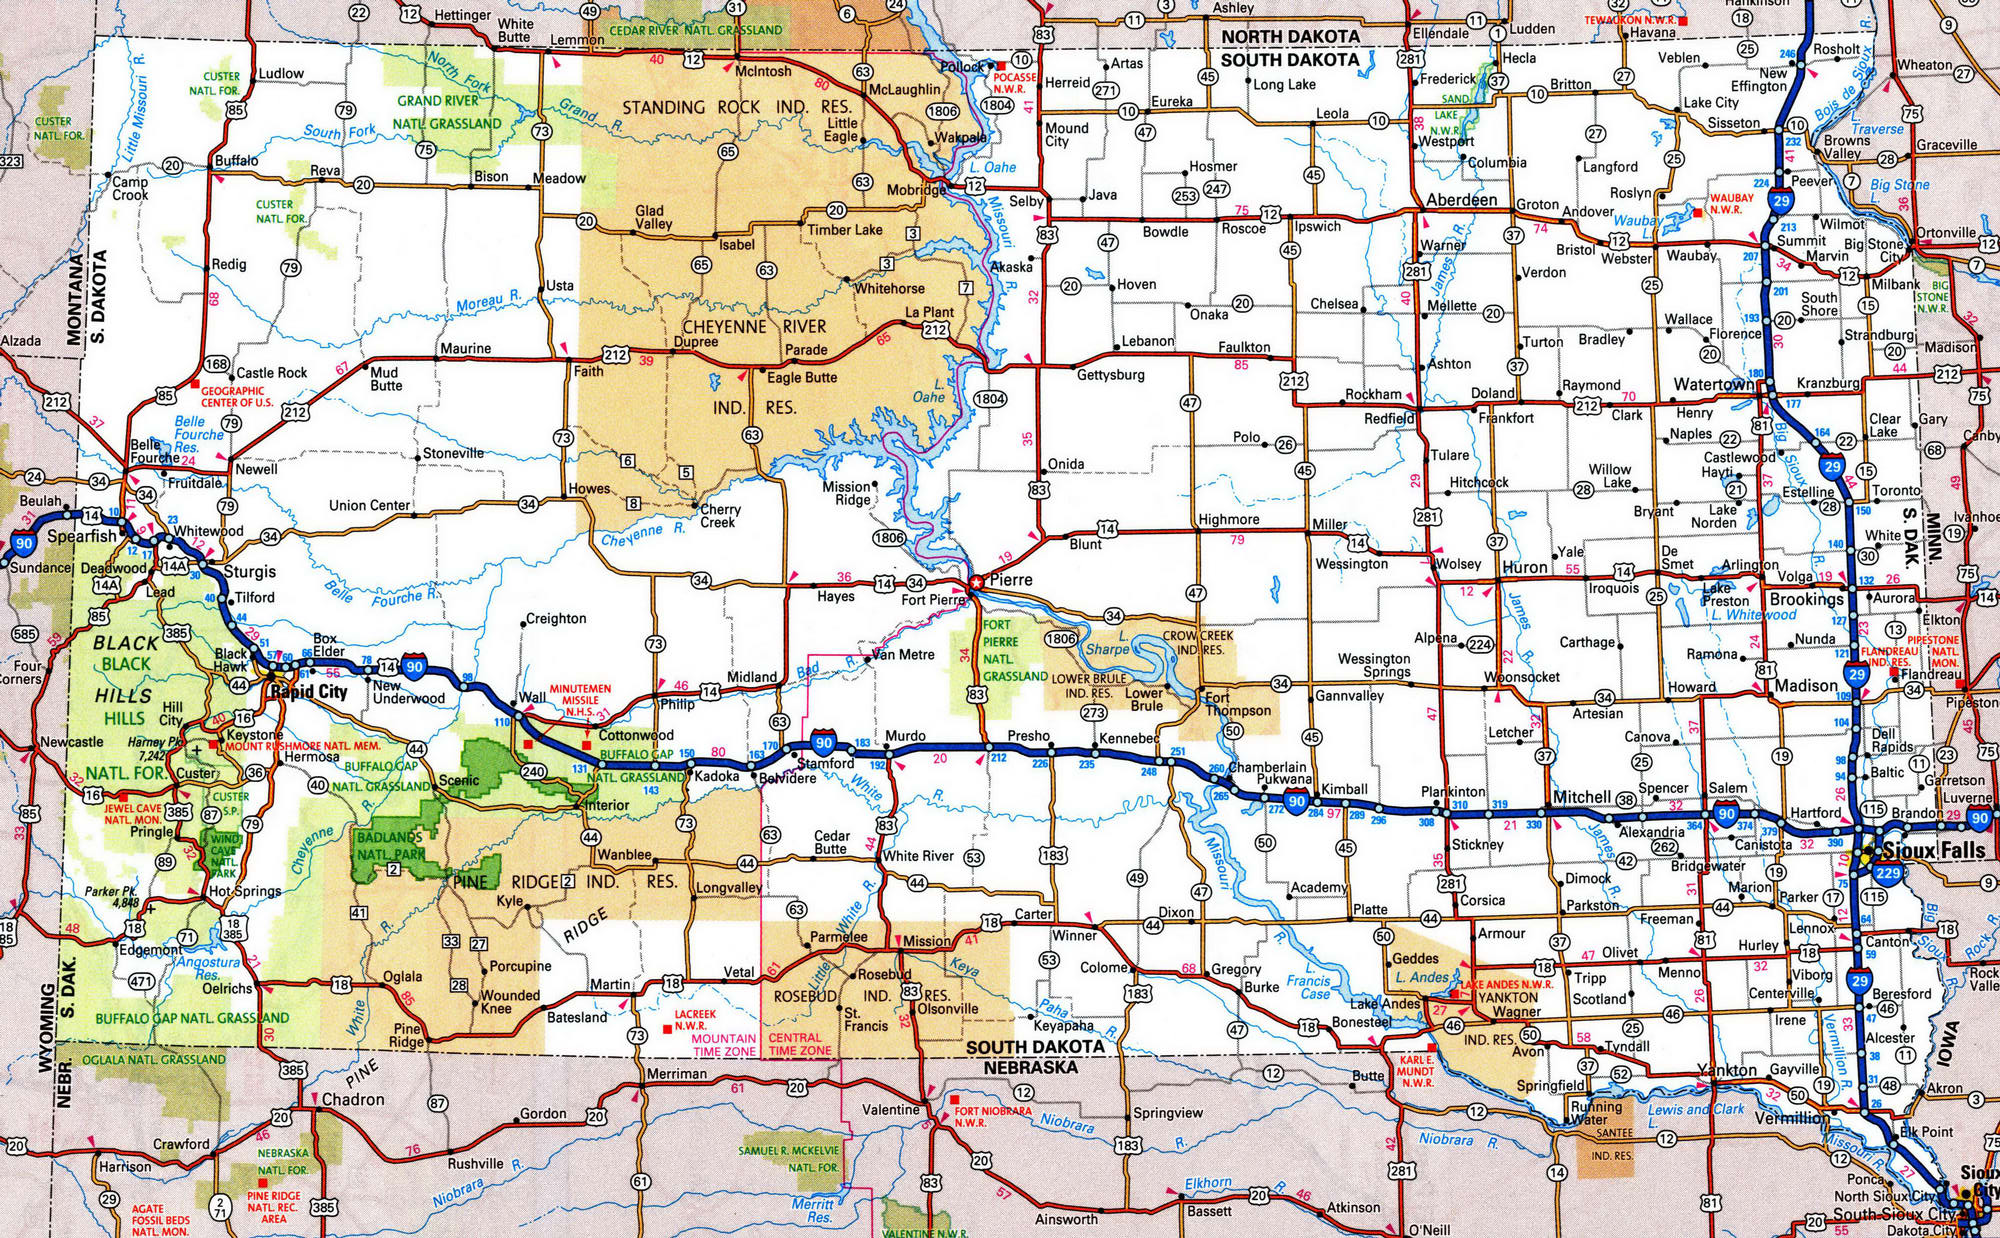 Detailed map of South Dakota